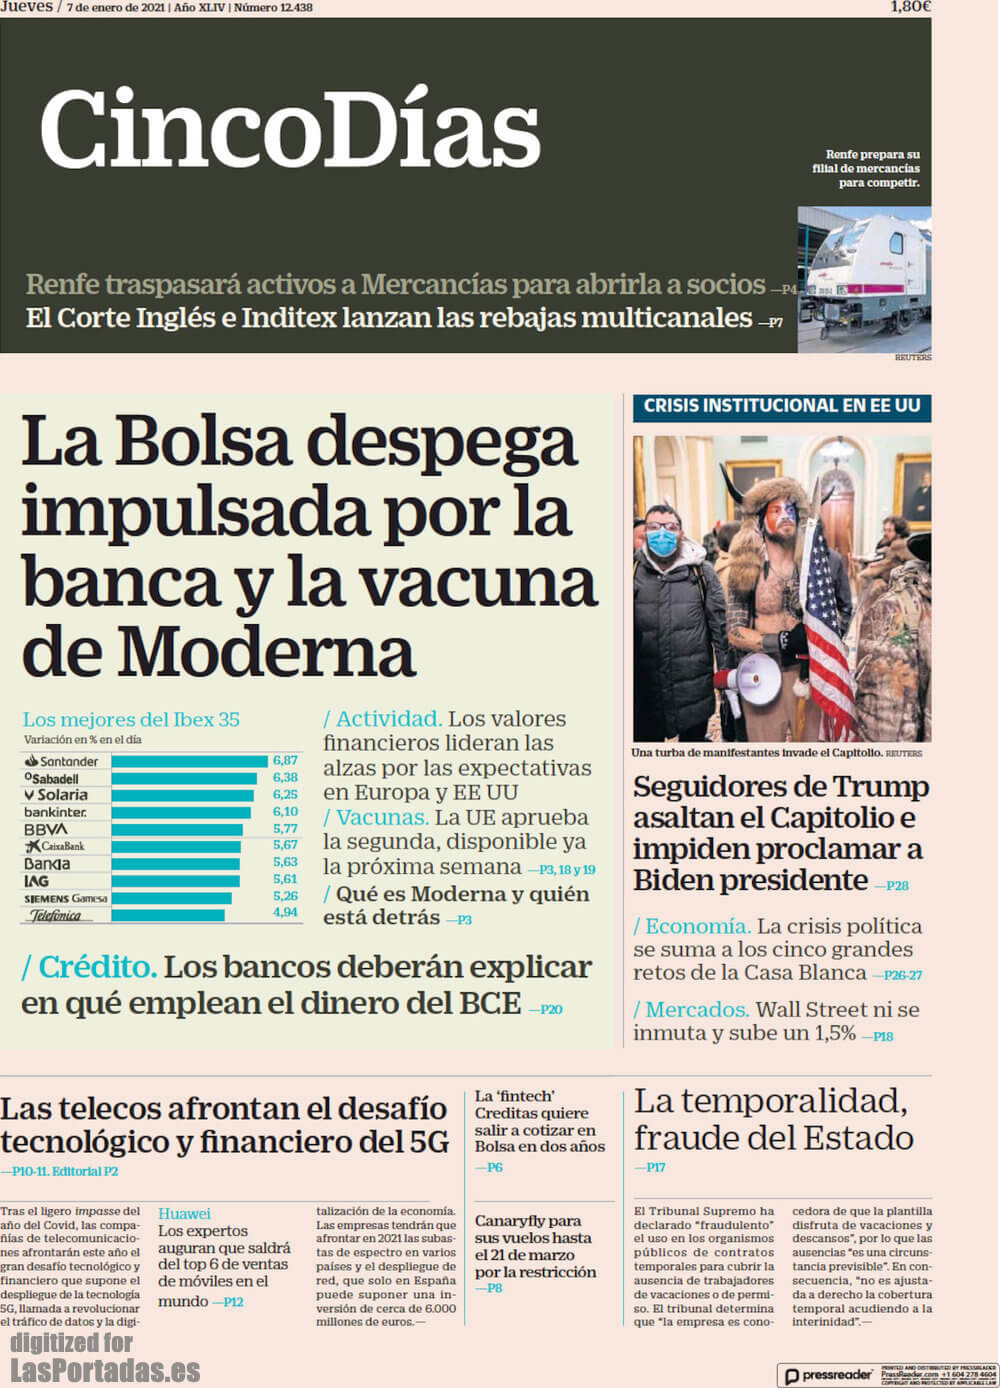 Spain newspapers 55 Cinco Dias